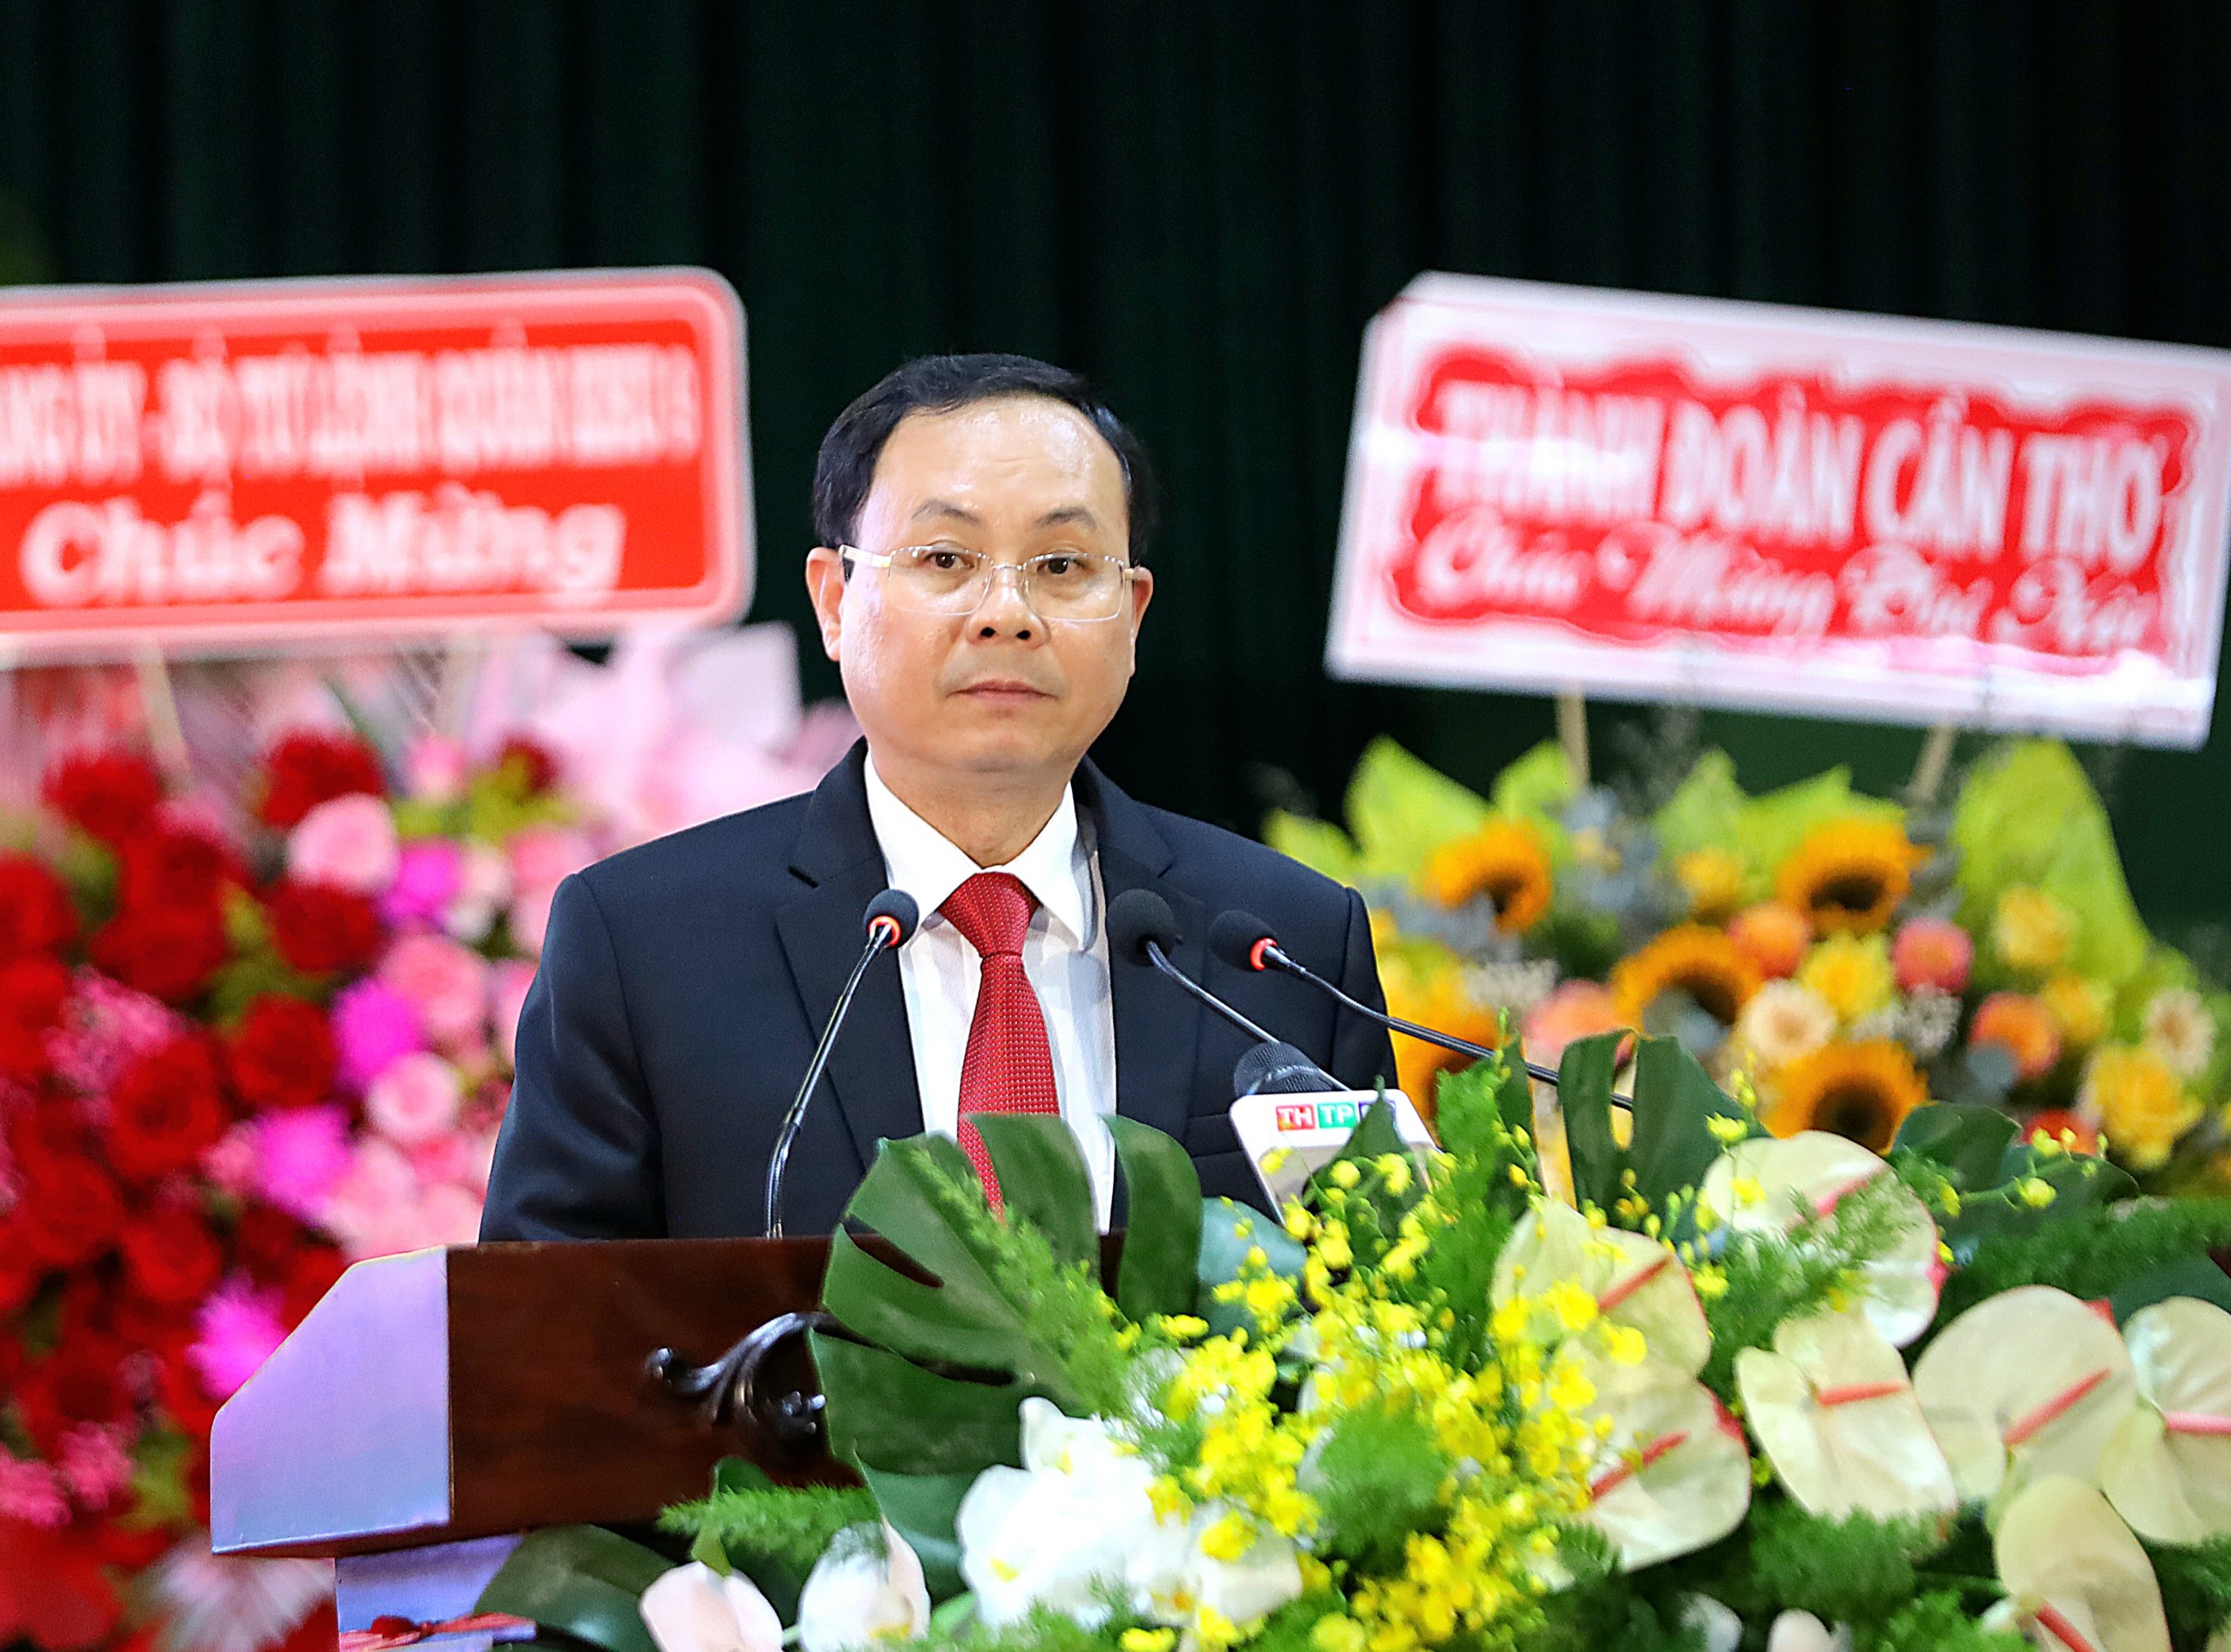 Ông Nguyễn Văn Hiếu - Ủy viên dự khuyết BCH Trung ương Đảng, Bí thư Thành ủy Cần Thơ phát biểu chỉ đạo tại đại hội.